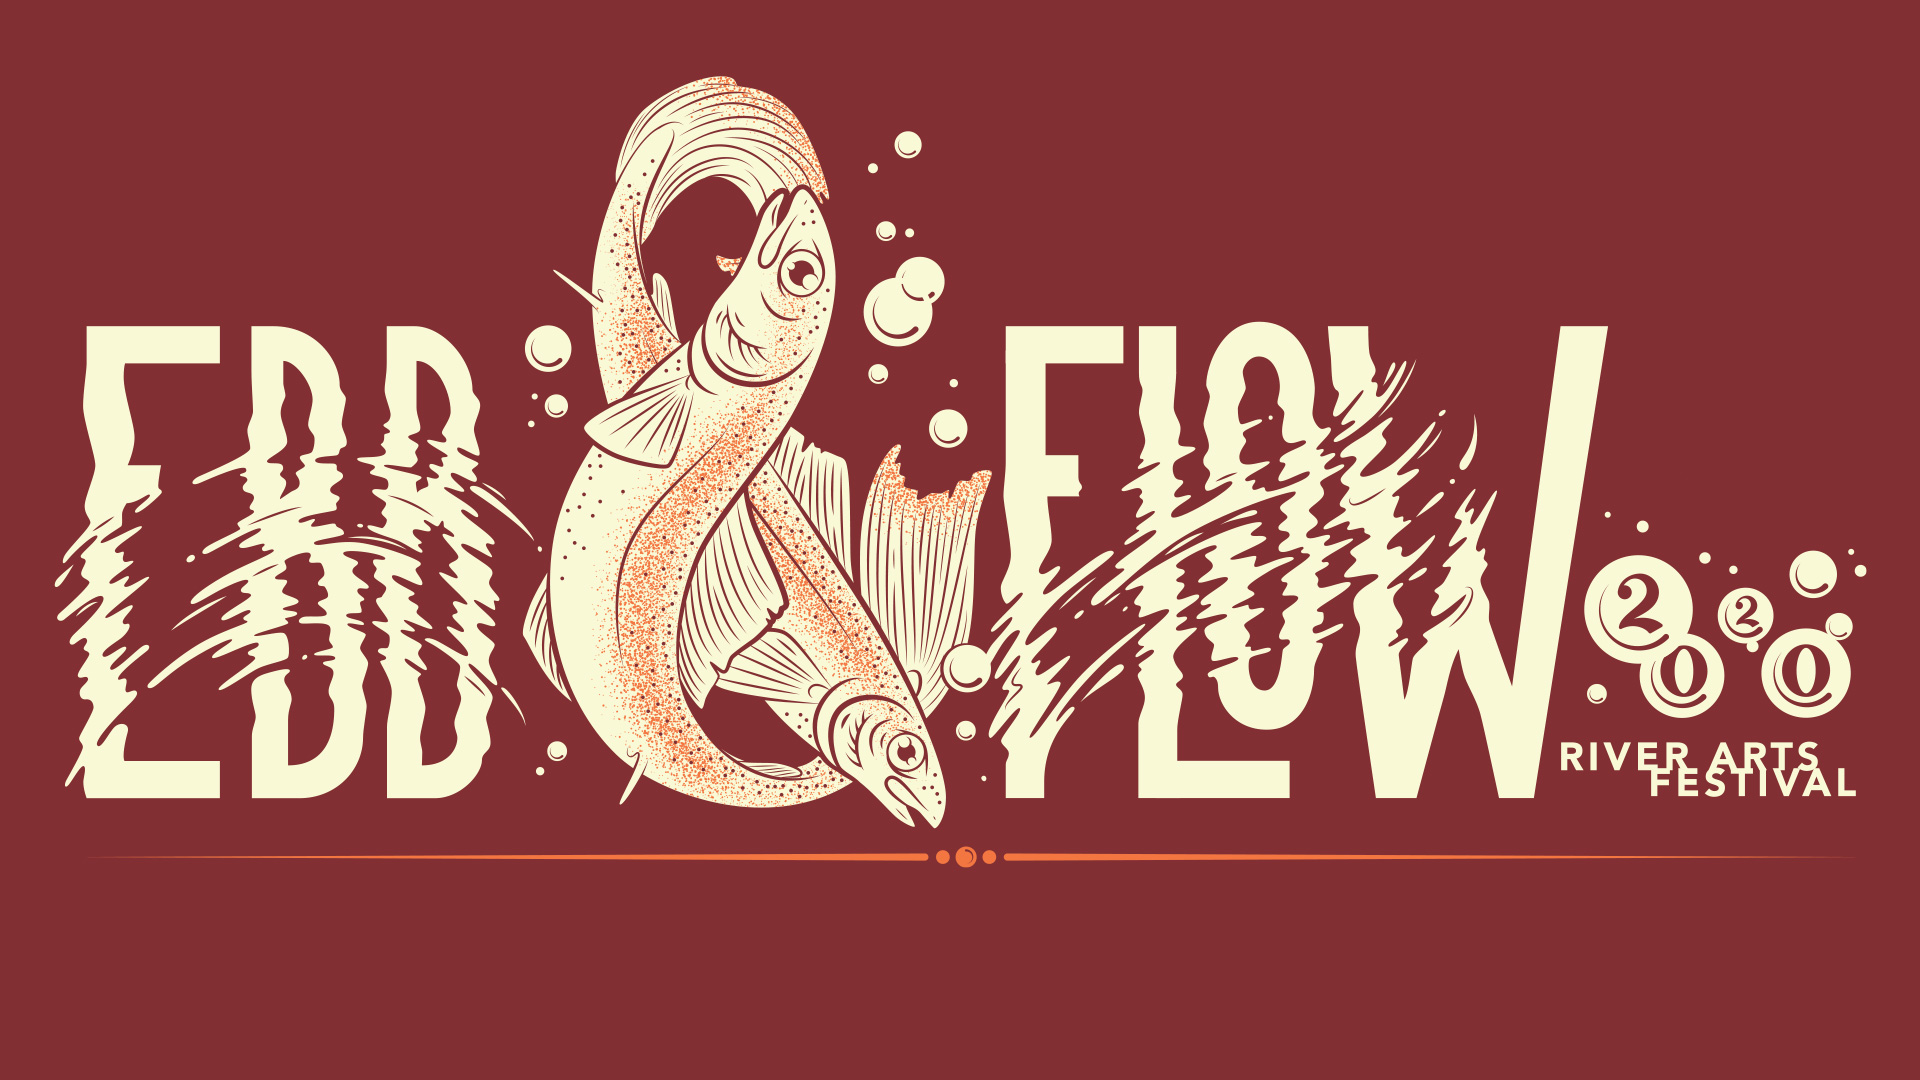 Ebb Flow River Arts Festival - Event Cruz